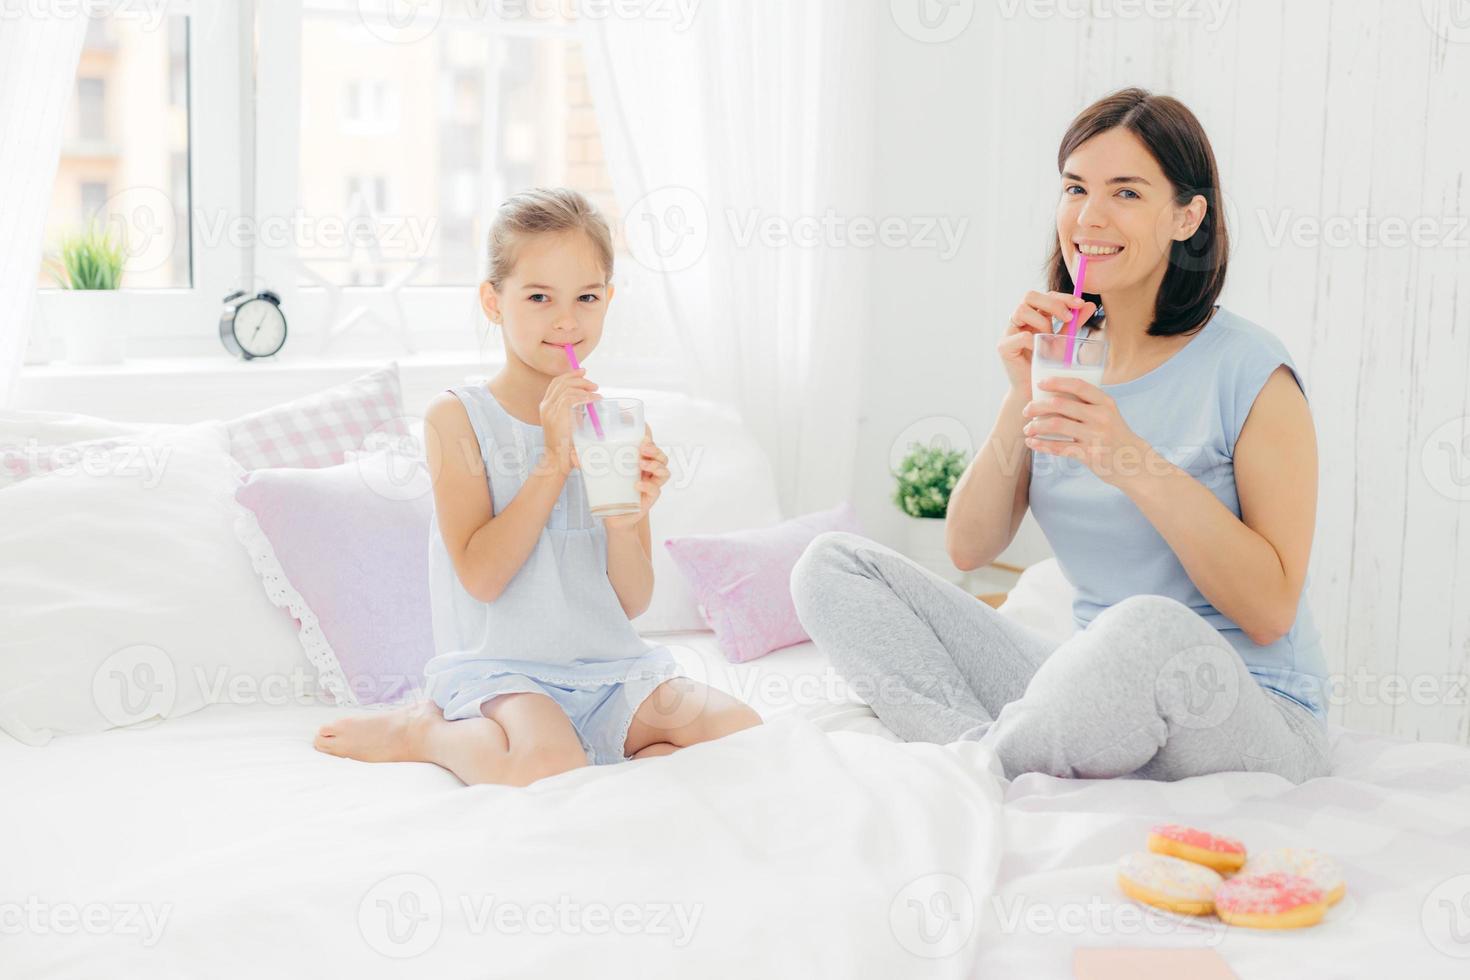 vrolijke moeder en dochter gekleed in pyjama, ontbijten in de ochtend, milkshake drinken met donuts, gekruiste benen zitten op comfortabel bed in witte slaapkamer. mensen en levensstijl concept foto